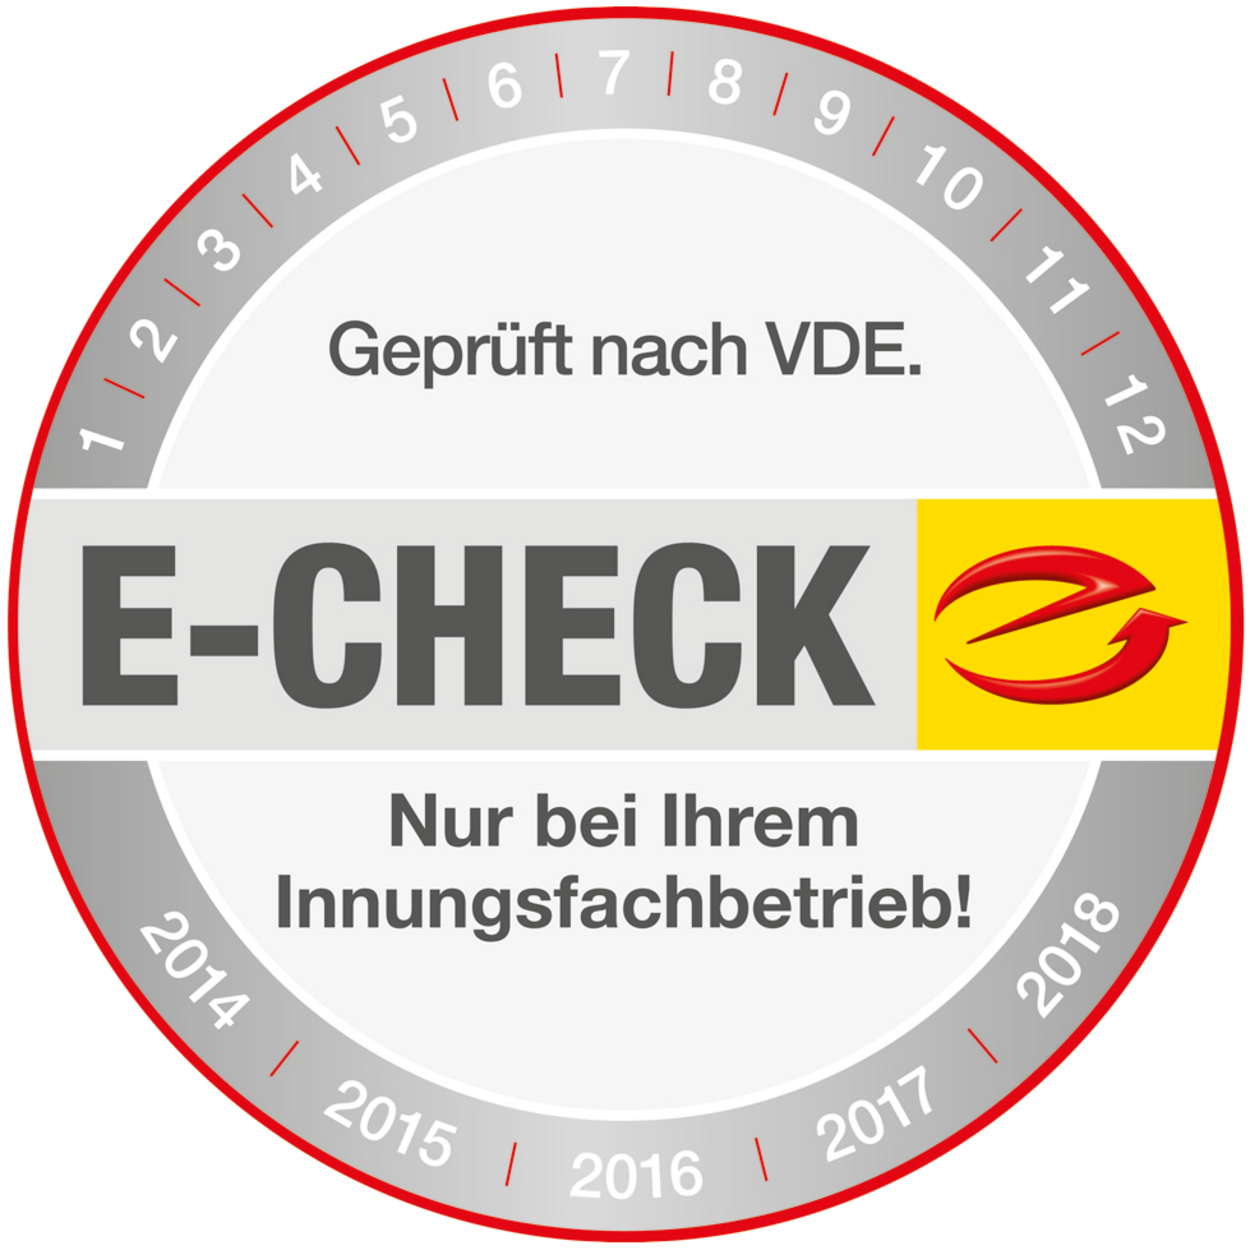 Der E-Check bei Elektro Hafner GmbH in Gmund am Tegernsee